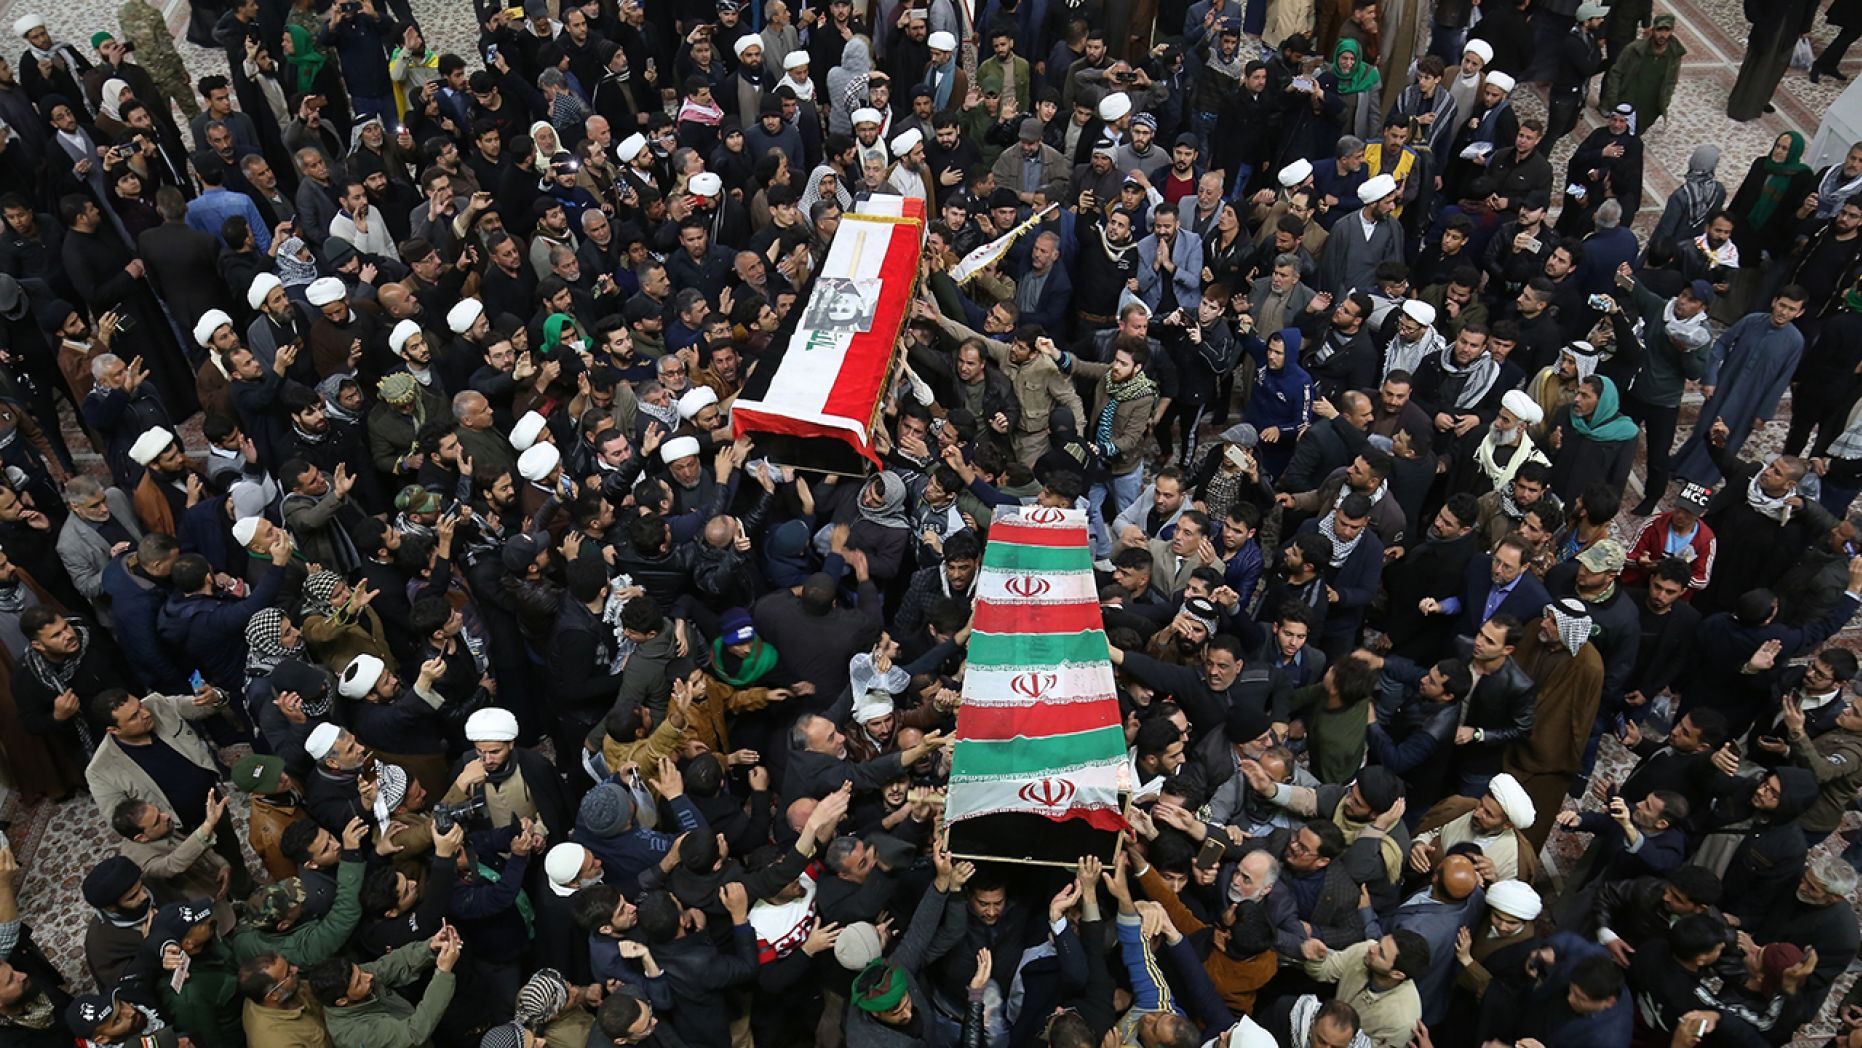 Đám tang đưa quan tài tướng Soleimani và phó tướng Abu Mahdi al-Muhandis đến đền thờ Imam Ali ở Najaf (Iraq), hôm 4/1 - Ảnh: AP